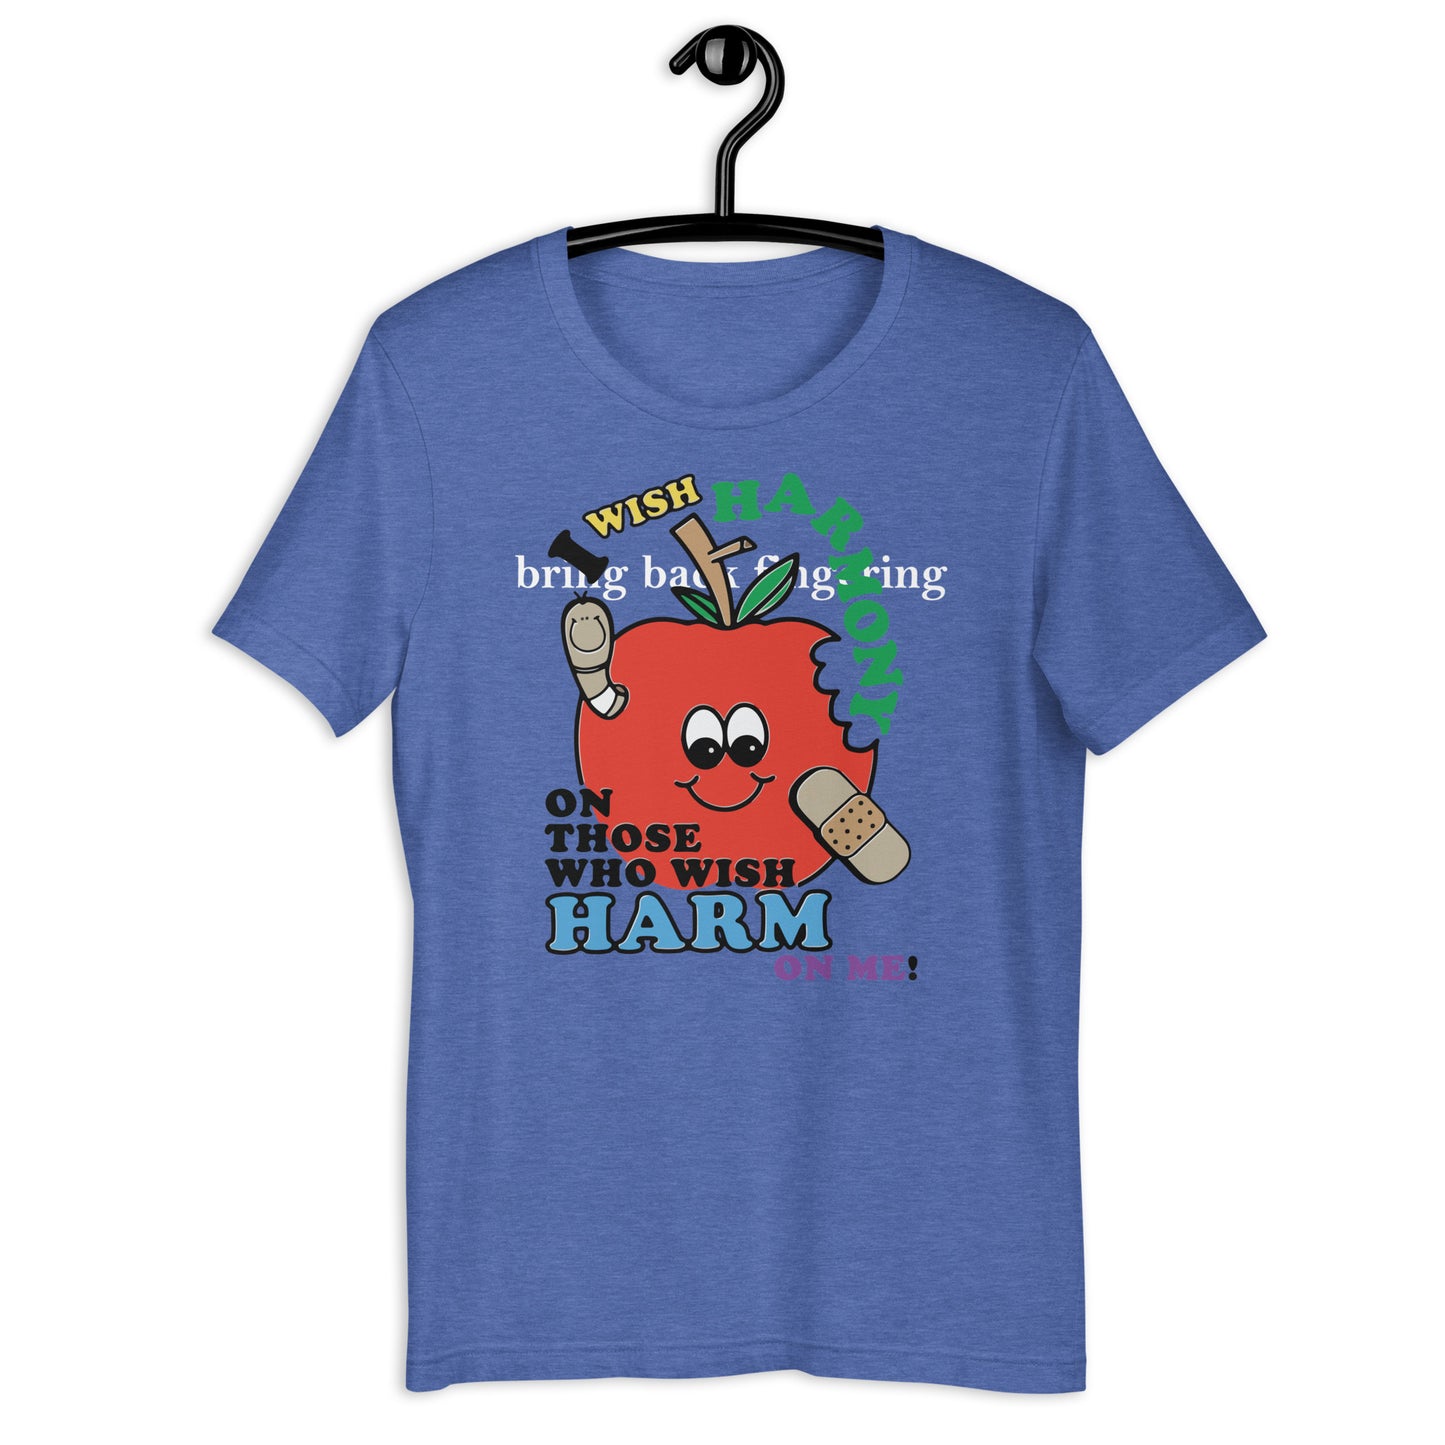 I wish harmony to those who wish harm on me. Unisex t-shirt